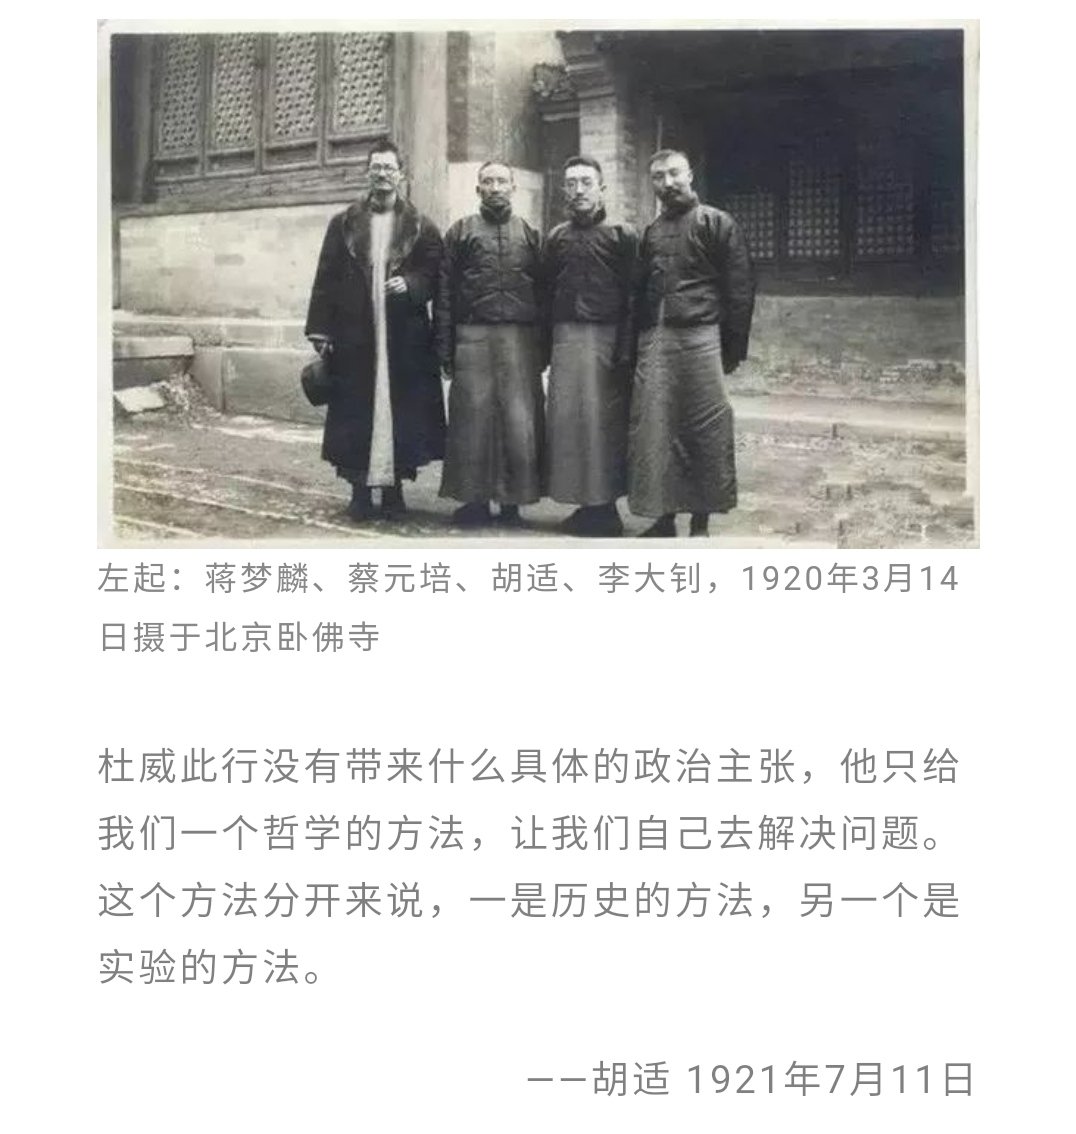 在1919年 “五四” 运动前后时期，以胡适为主的“新文化派”和以梅光迪为主的“学衡派”，均在为古老中国寻找新的转机，希望中国文化复兴。但是，他们在接受和选择欧美文化时的不同认识，走上了截然相反的道路。在抗衡中，“学衡派” 一路败北。 http://m.zhishifenzi.com/depth/depth/7689.html